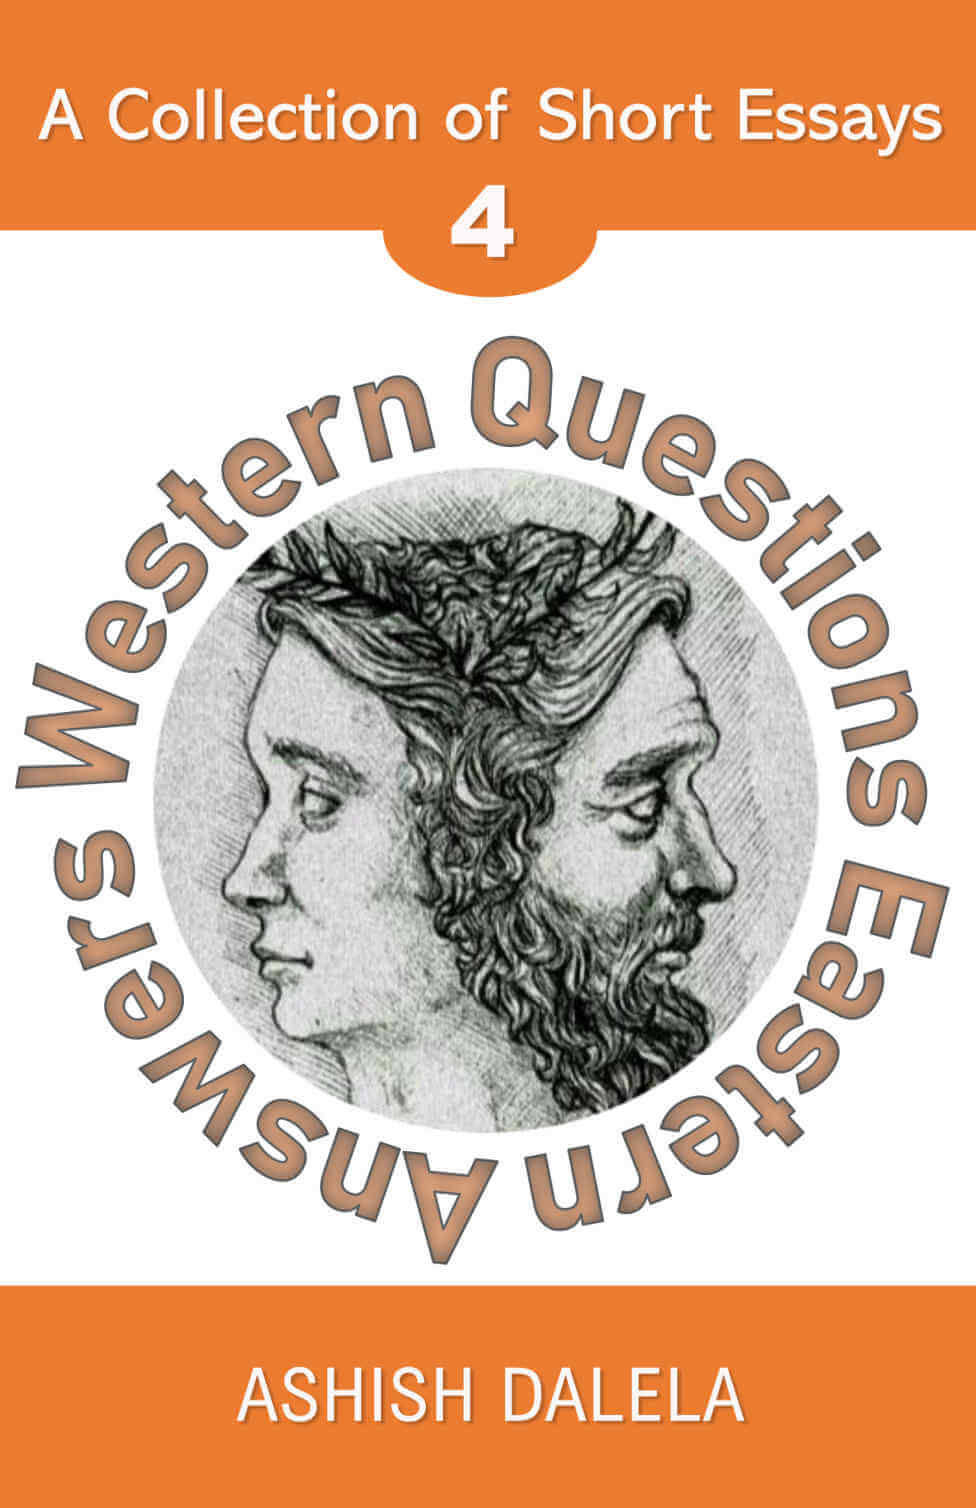 Domande occidentali Risposte orientali: una raccolta di saggi brevi - Volume 4